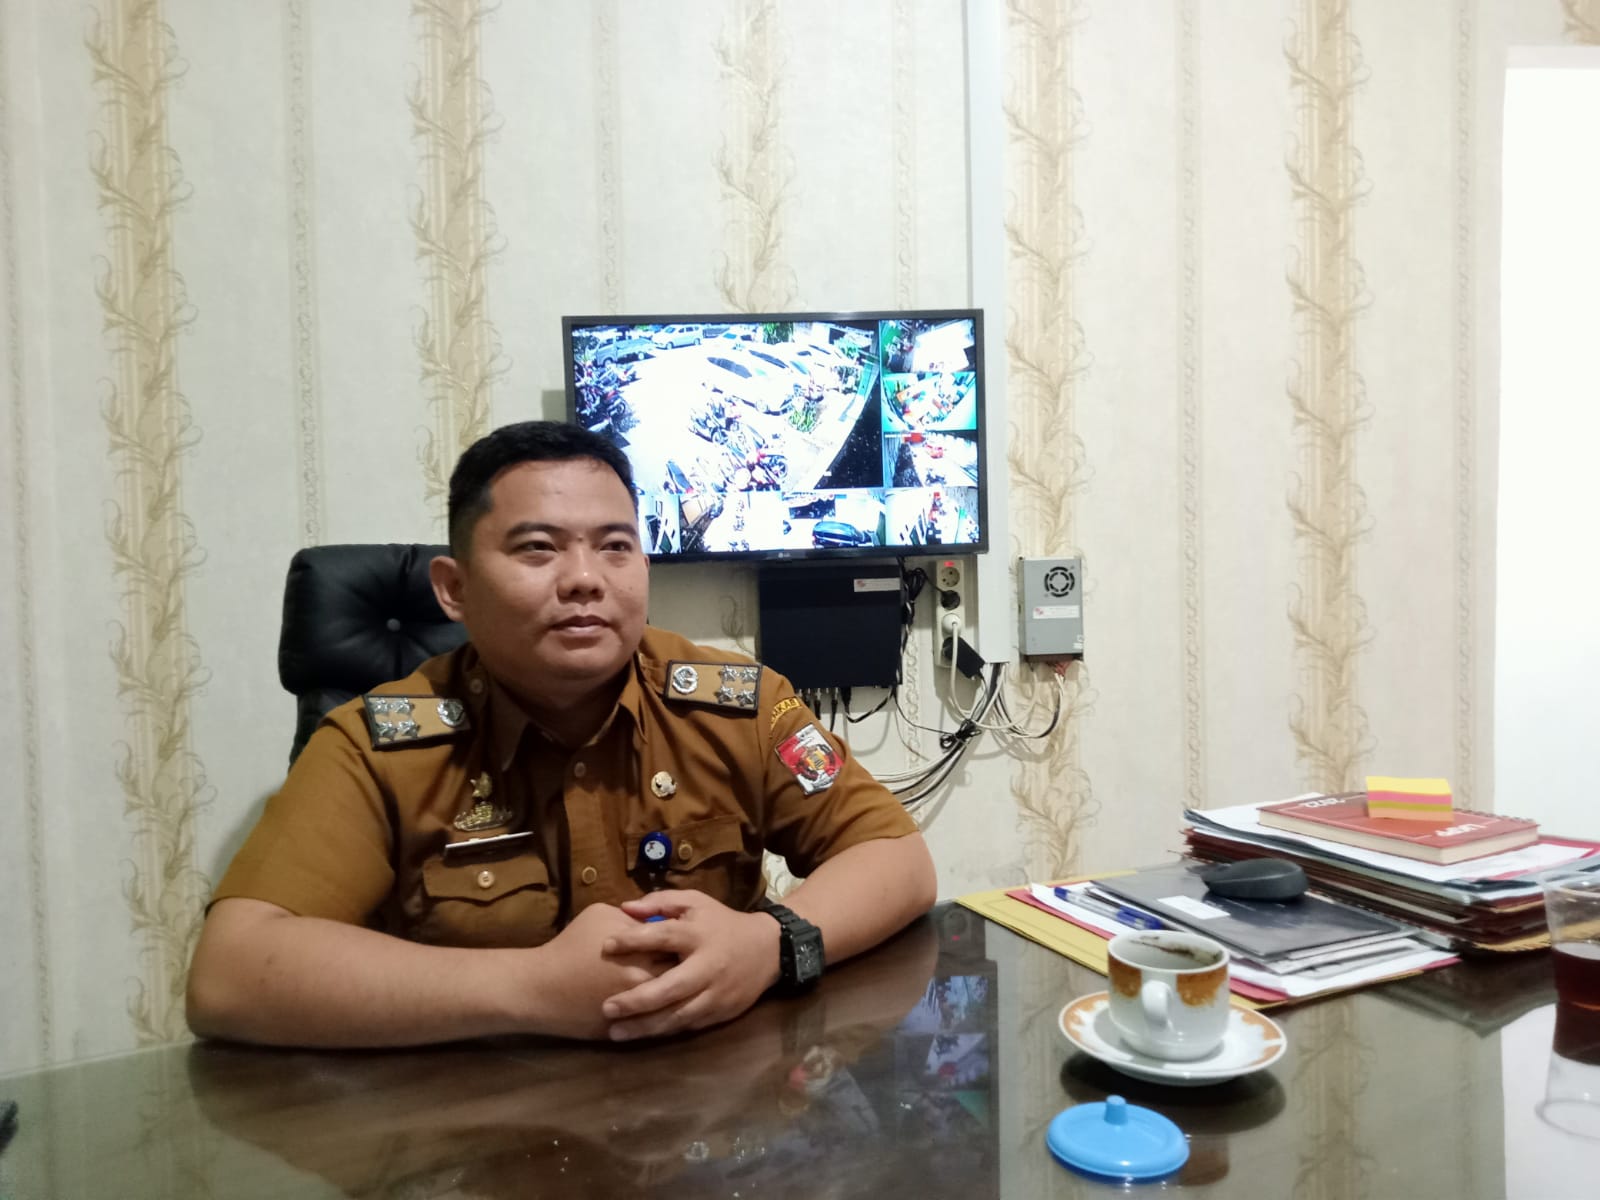 Jelang Akhir Tahun, Lampung Utara Rampungkan Proses Pengadaan Barang dan Jasa